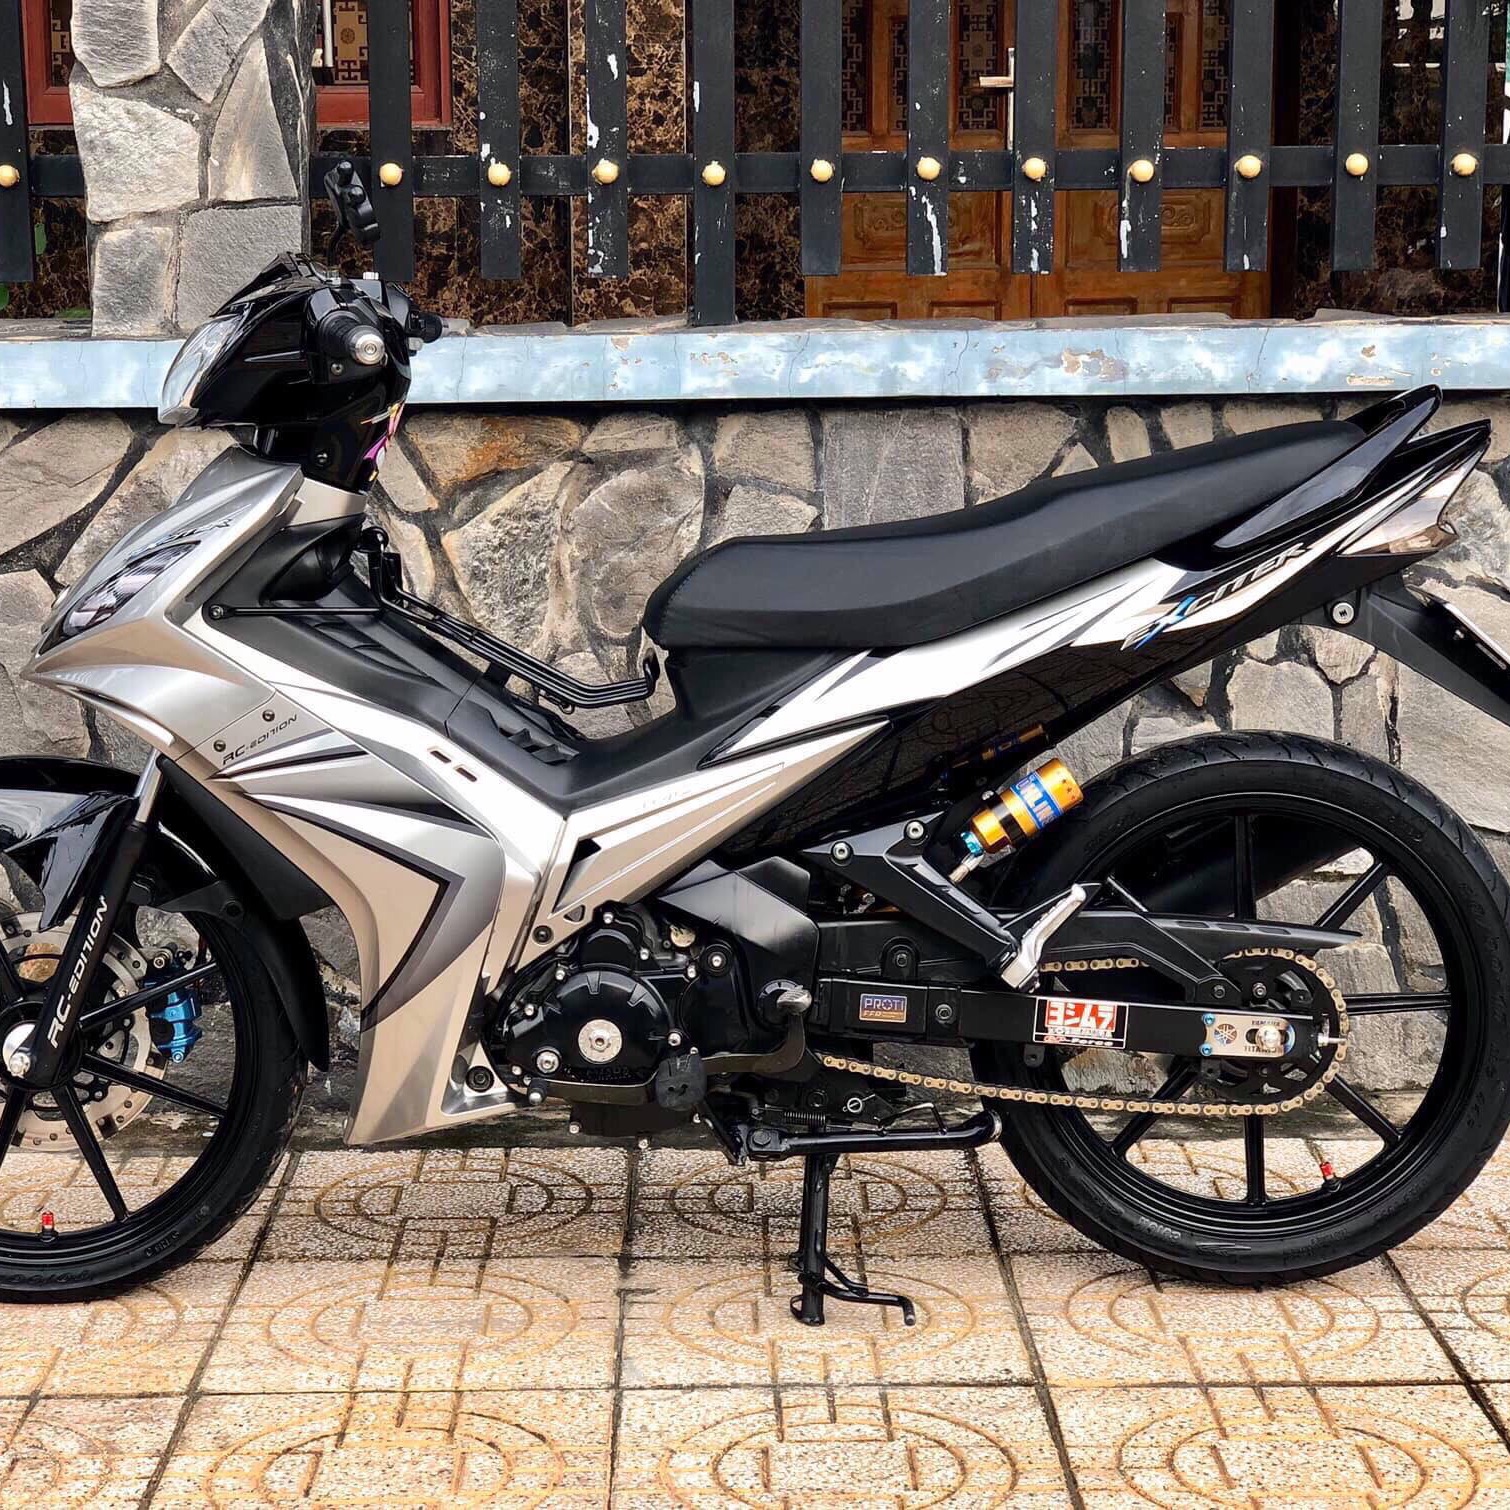 Yamaha ex 135 độ nhẹ nhàng đơn giản tại Việt Nam